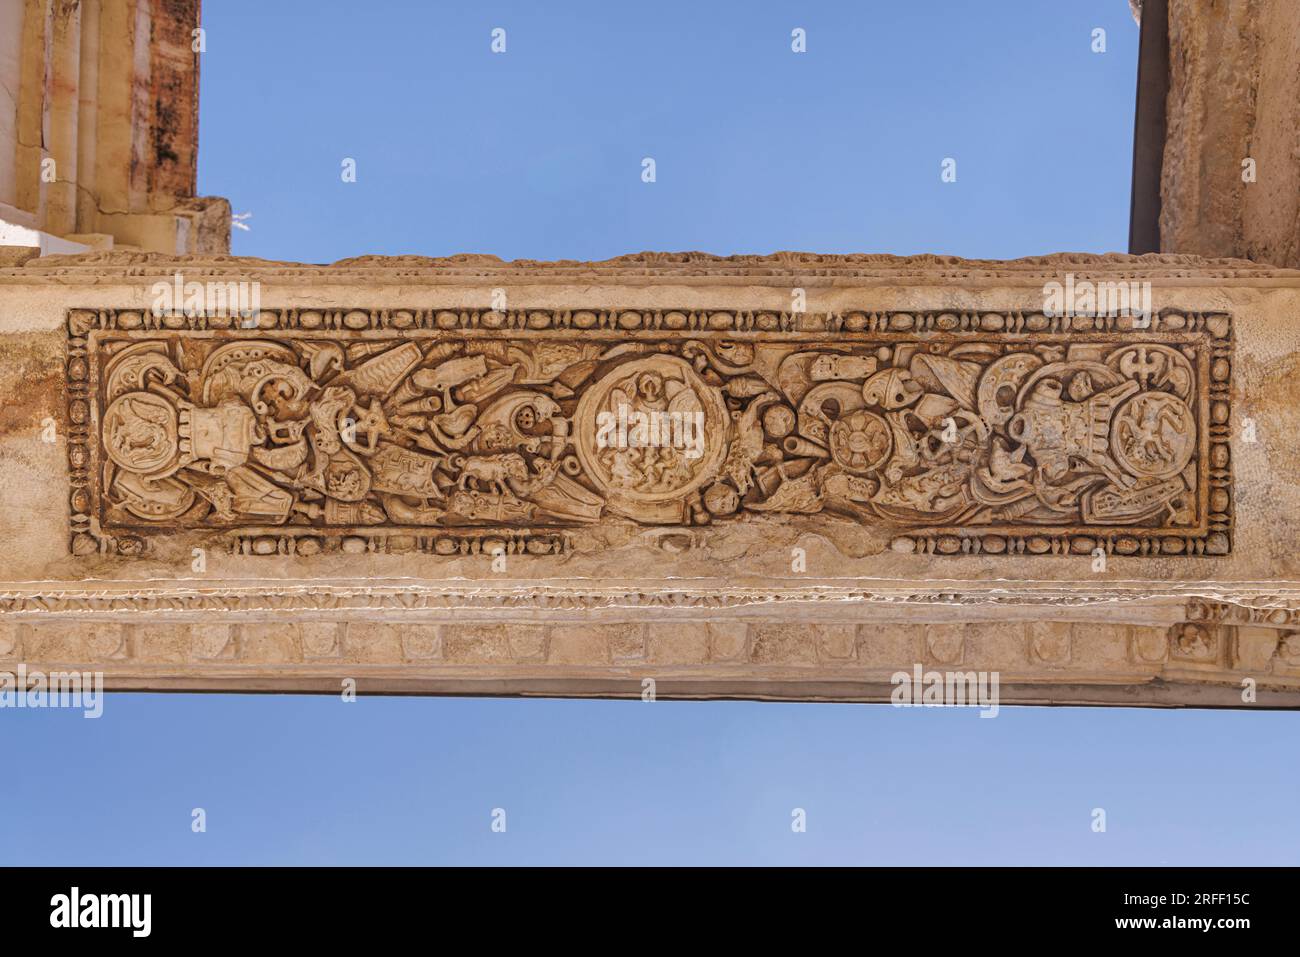 Spanien, Extremadura, Merida, archäologisches Ensemble von Merida, das von der UNESCO zum Weltkulturerbe erklärt wurde, die römischen Ruinen von Augusta Emerita, die Basilika Santa Eulalia, Details der Eingangsterrasse Stockfoto